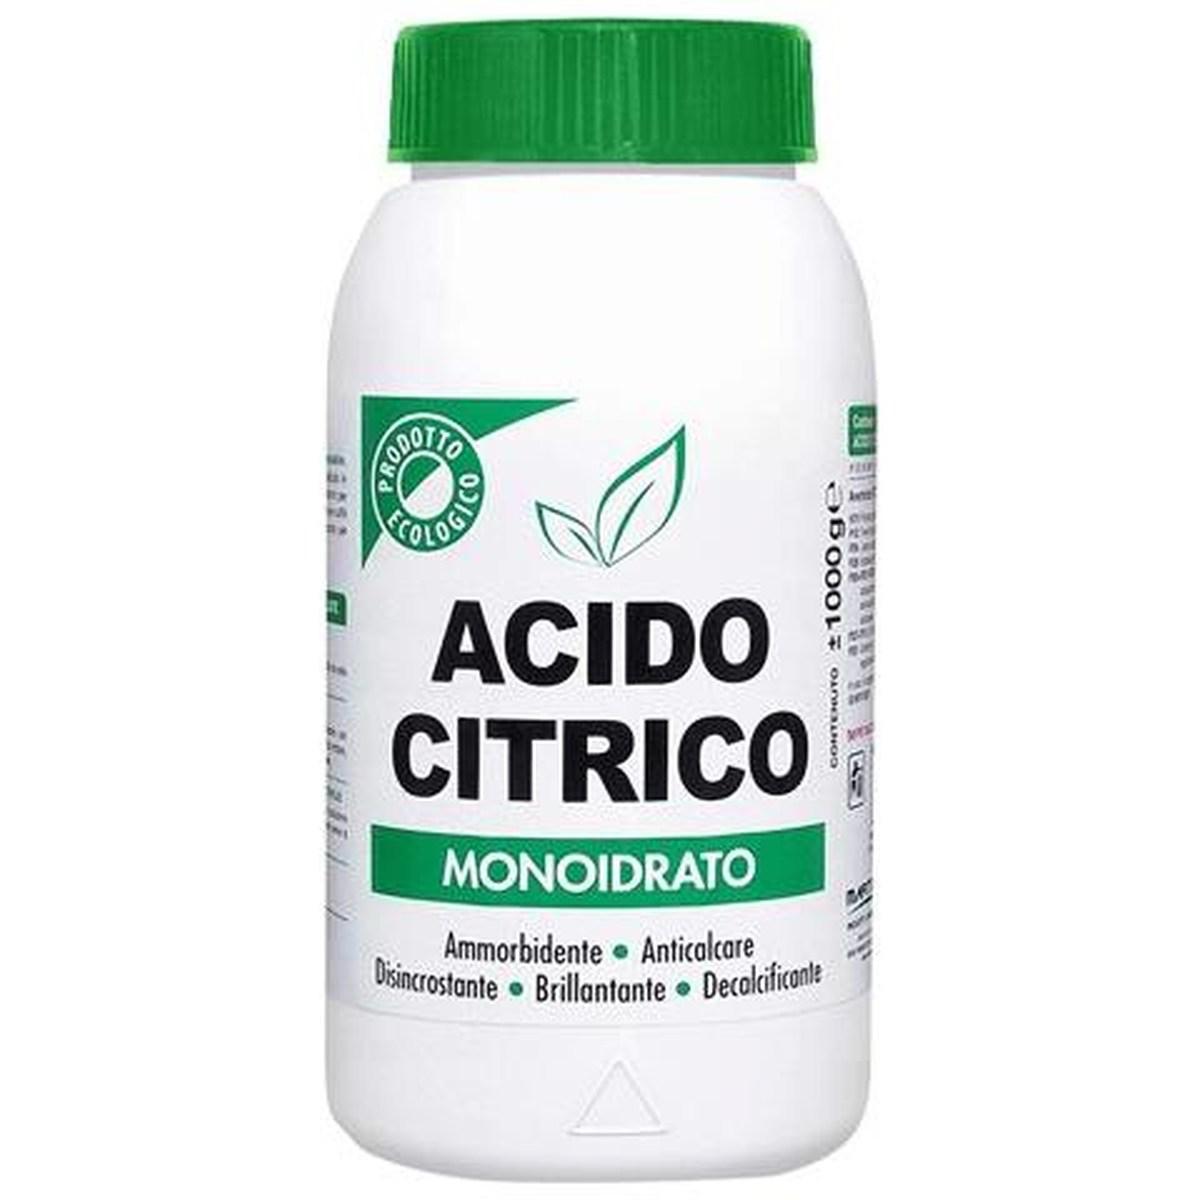 Acido citrico monoidrato kg. 1 in barattolo - multiuso